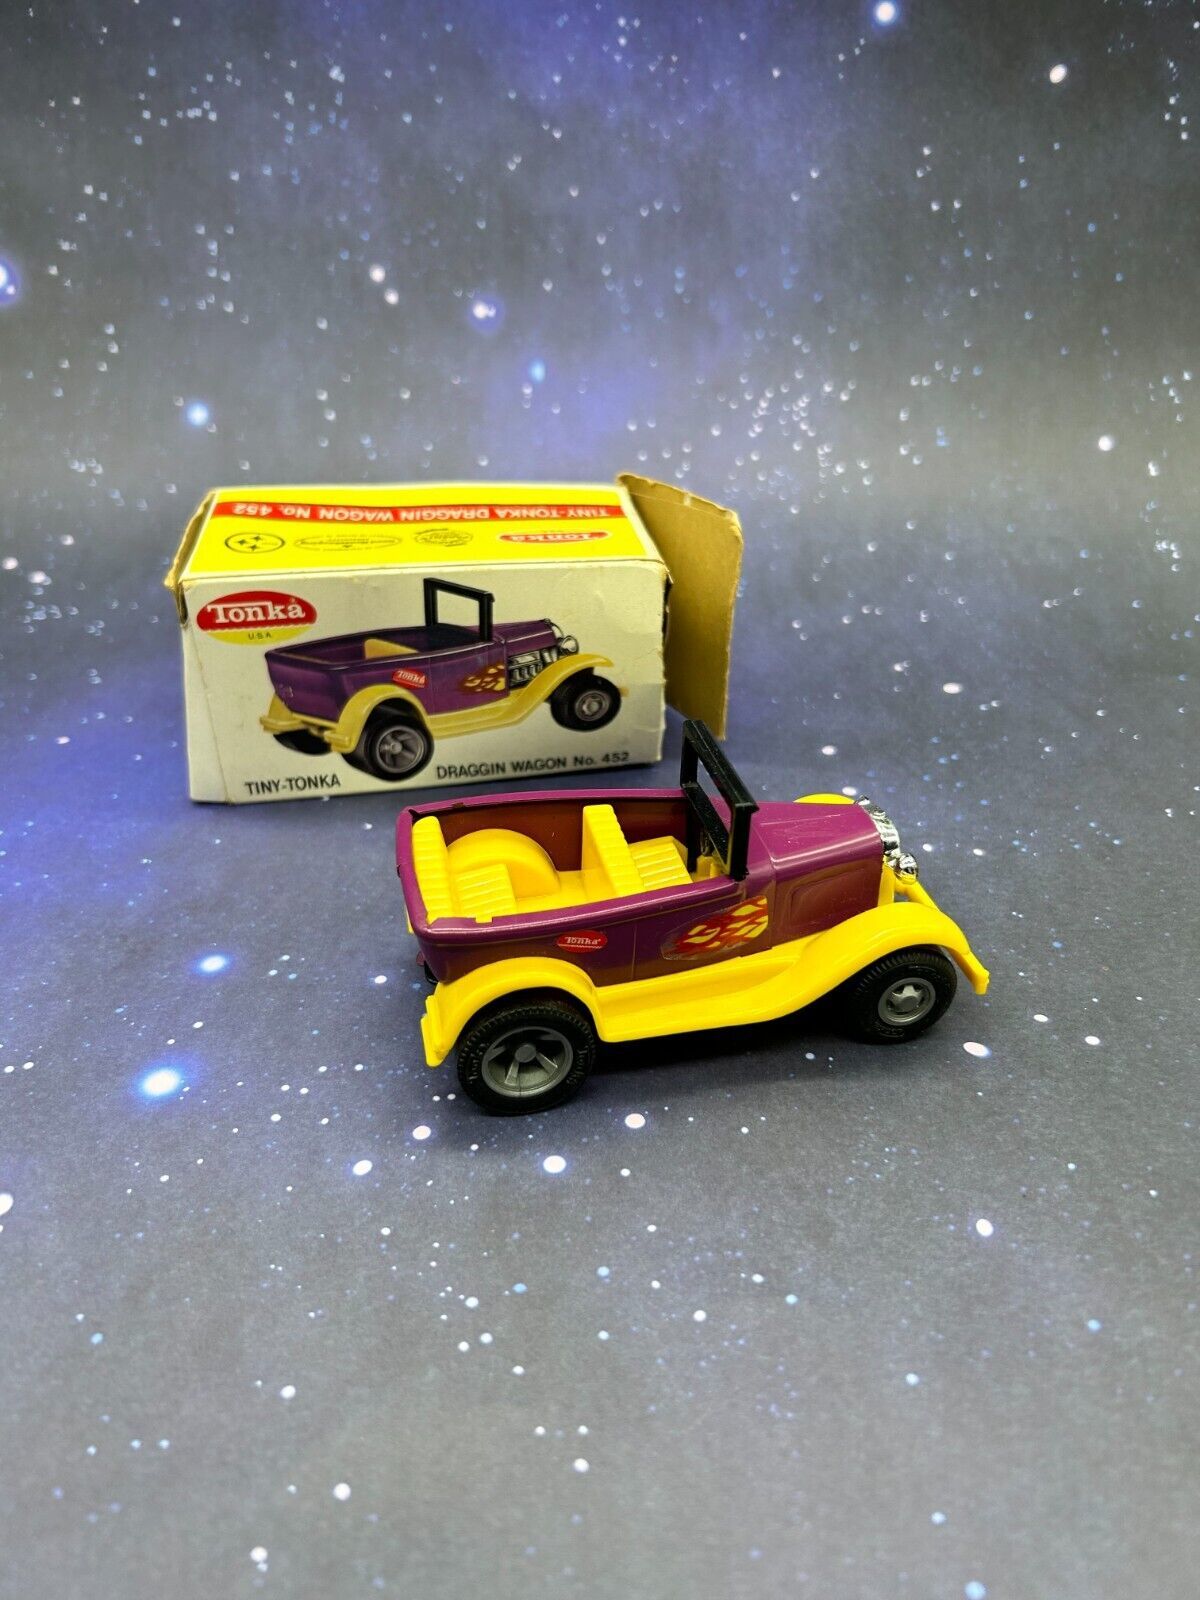 Tiny Tonka Draggin Wagon No 452 Hot Road Car Purple 55364 USA With Box - $46.51